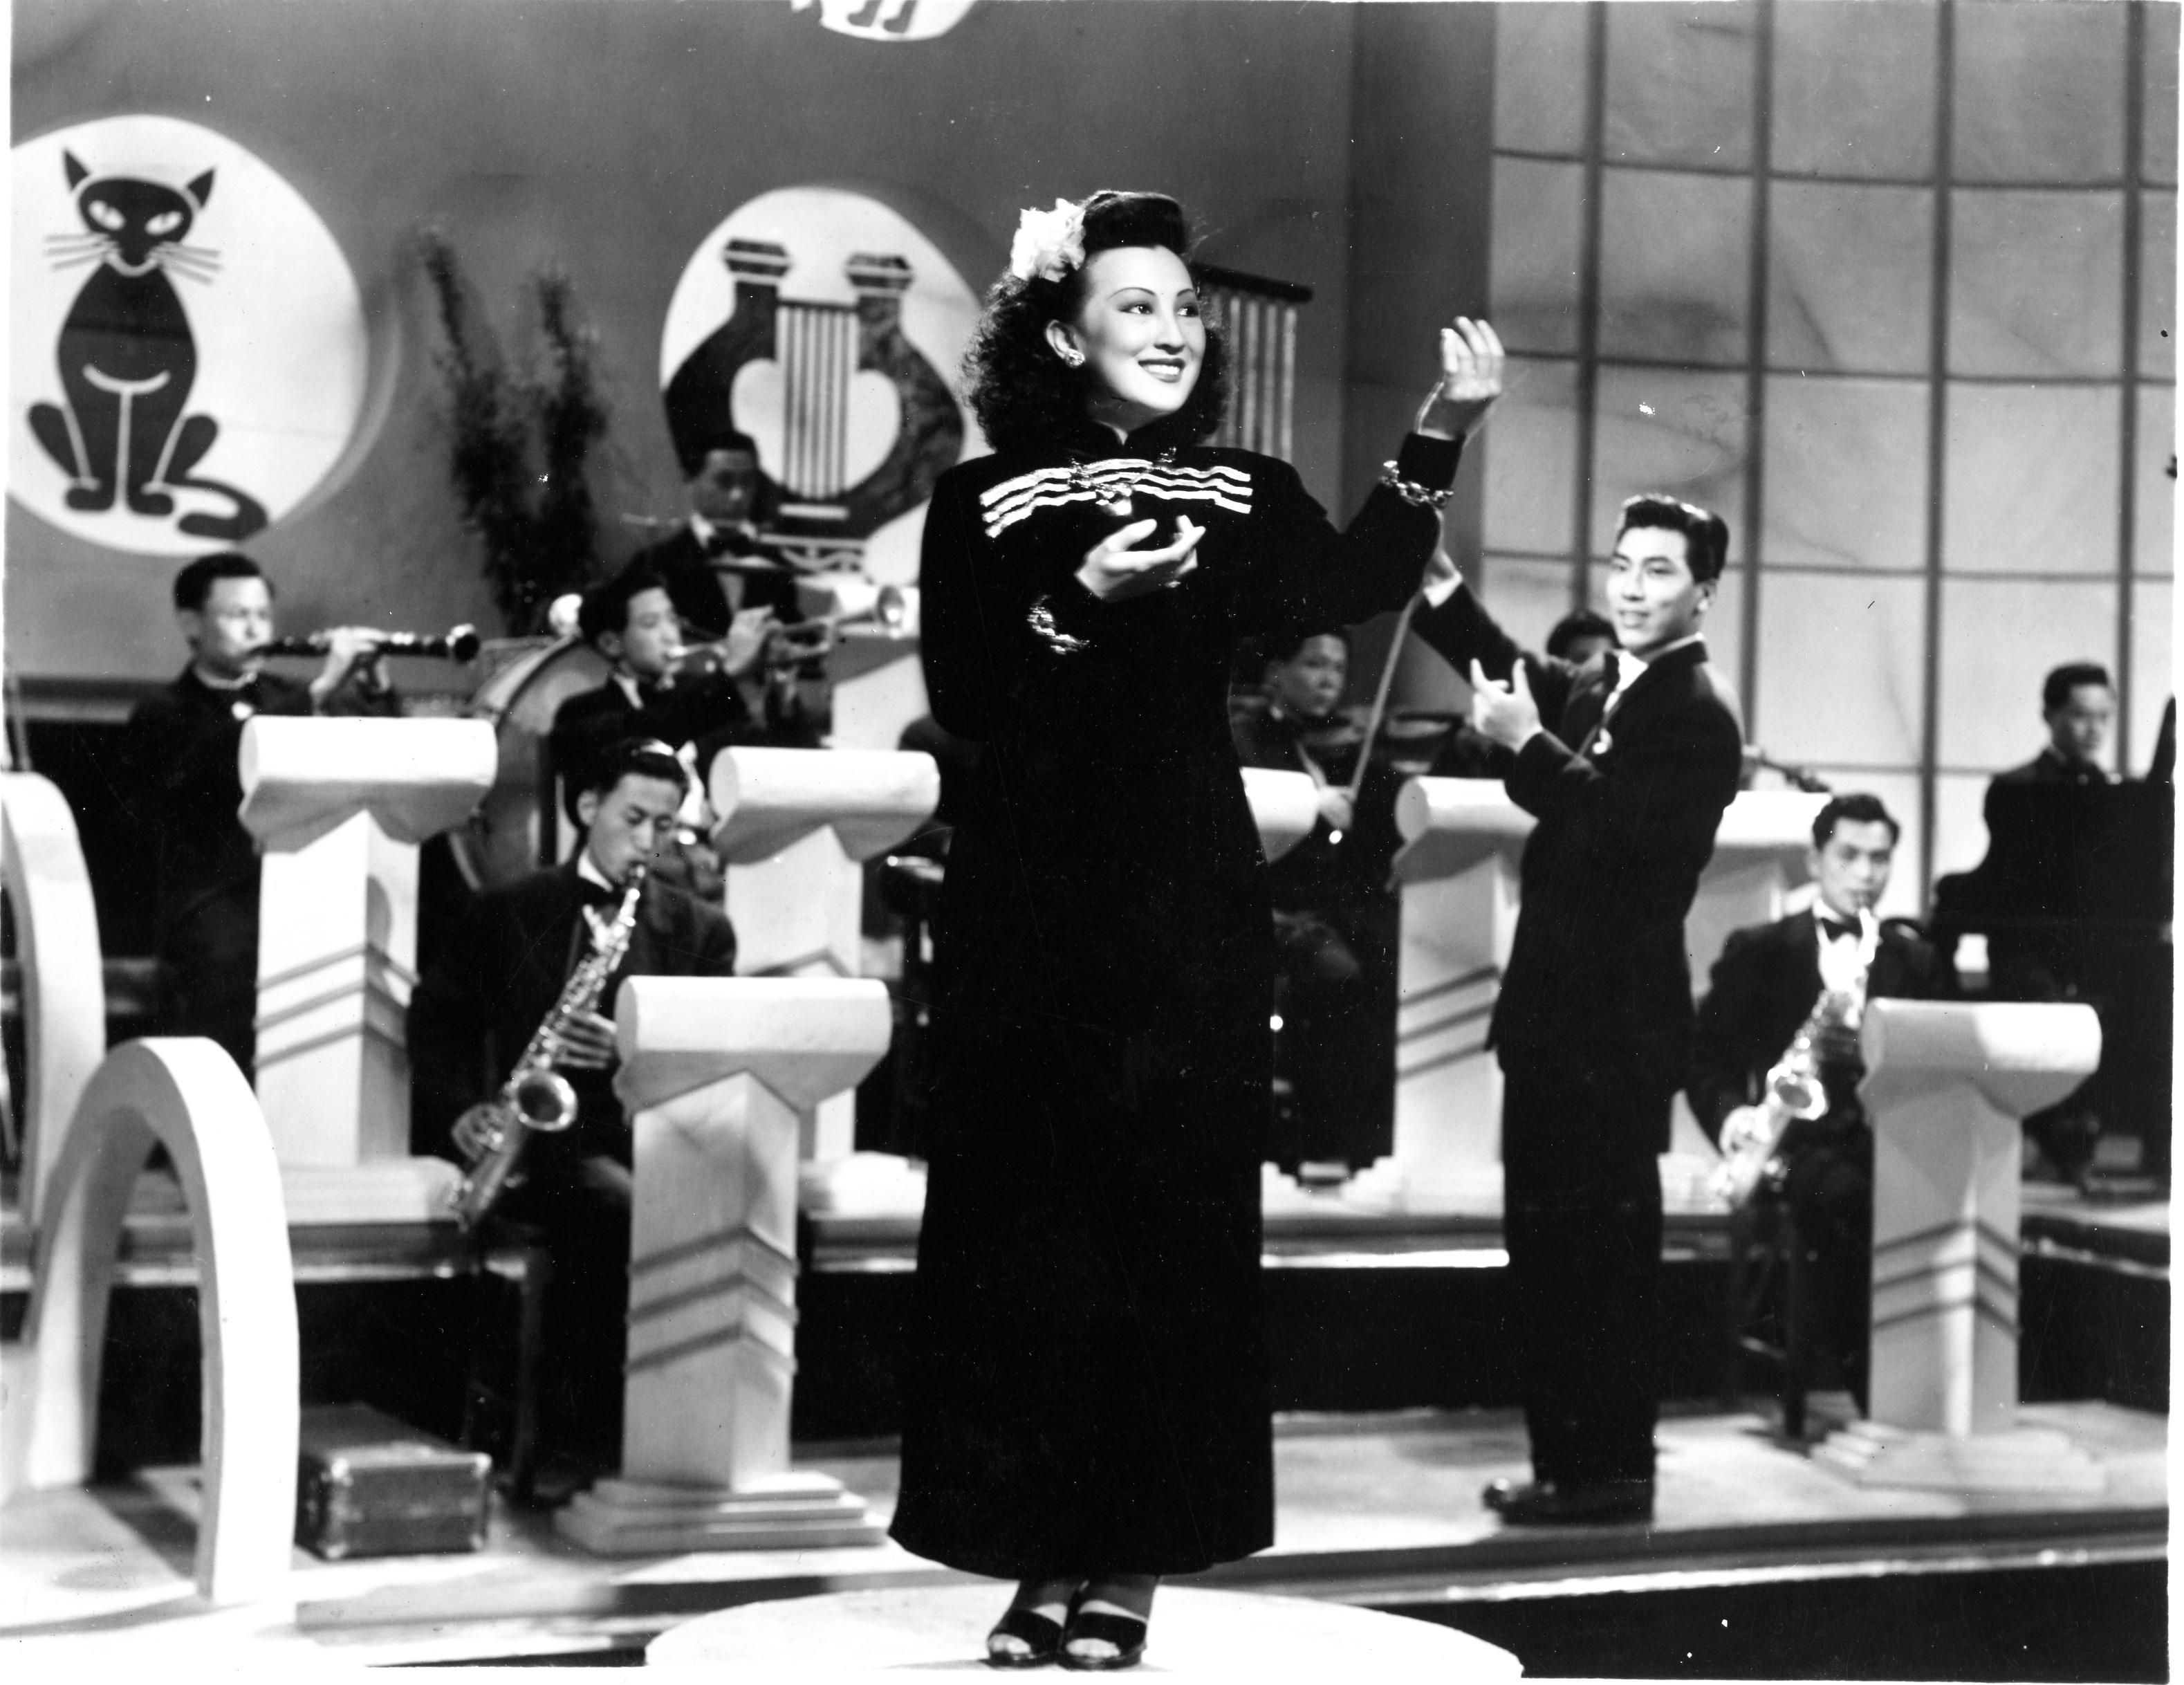 康樂及文化事務署香港電影資料館由一月二十七日至五月五日，逢星期五上午十一時的「影畫早晨」節目將以「歌舞昇平」為題，選映十五部不同年代的香港歌舞電影，讓觀眾在銀幕上重溫華麗的歌舞場面和風靡一時的時代曲。圖示《歌女之歌》（1948）劇照。